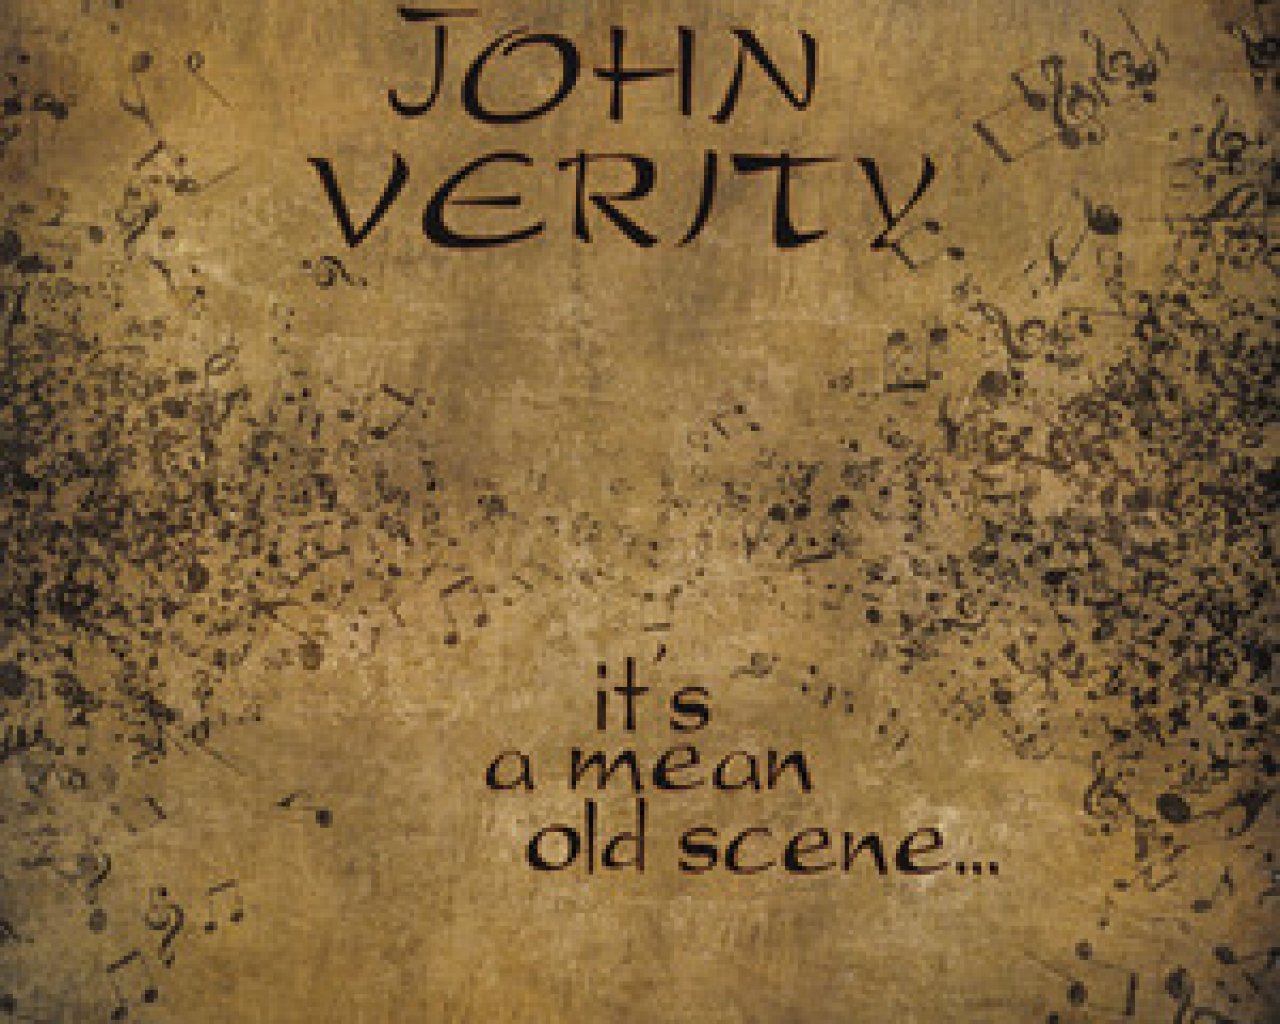 John Verity